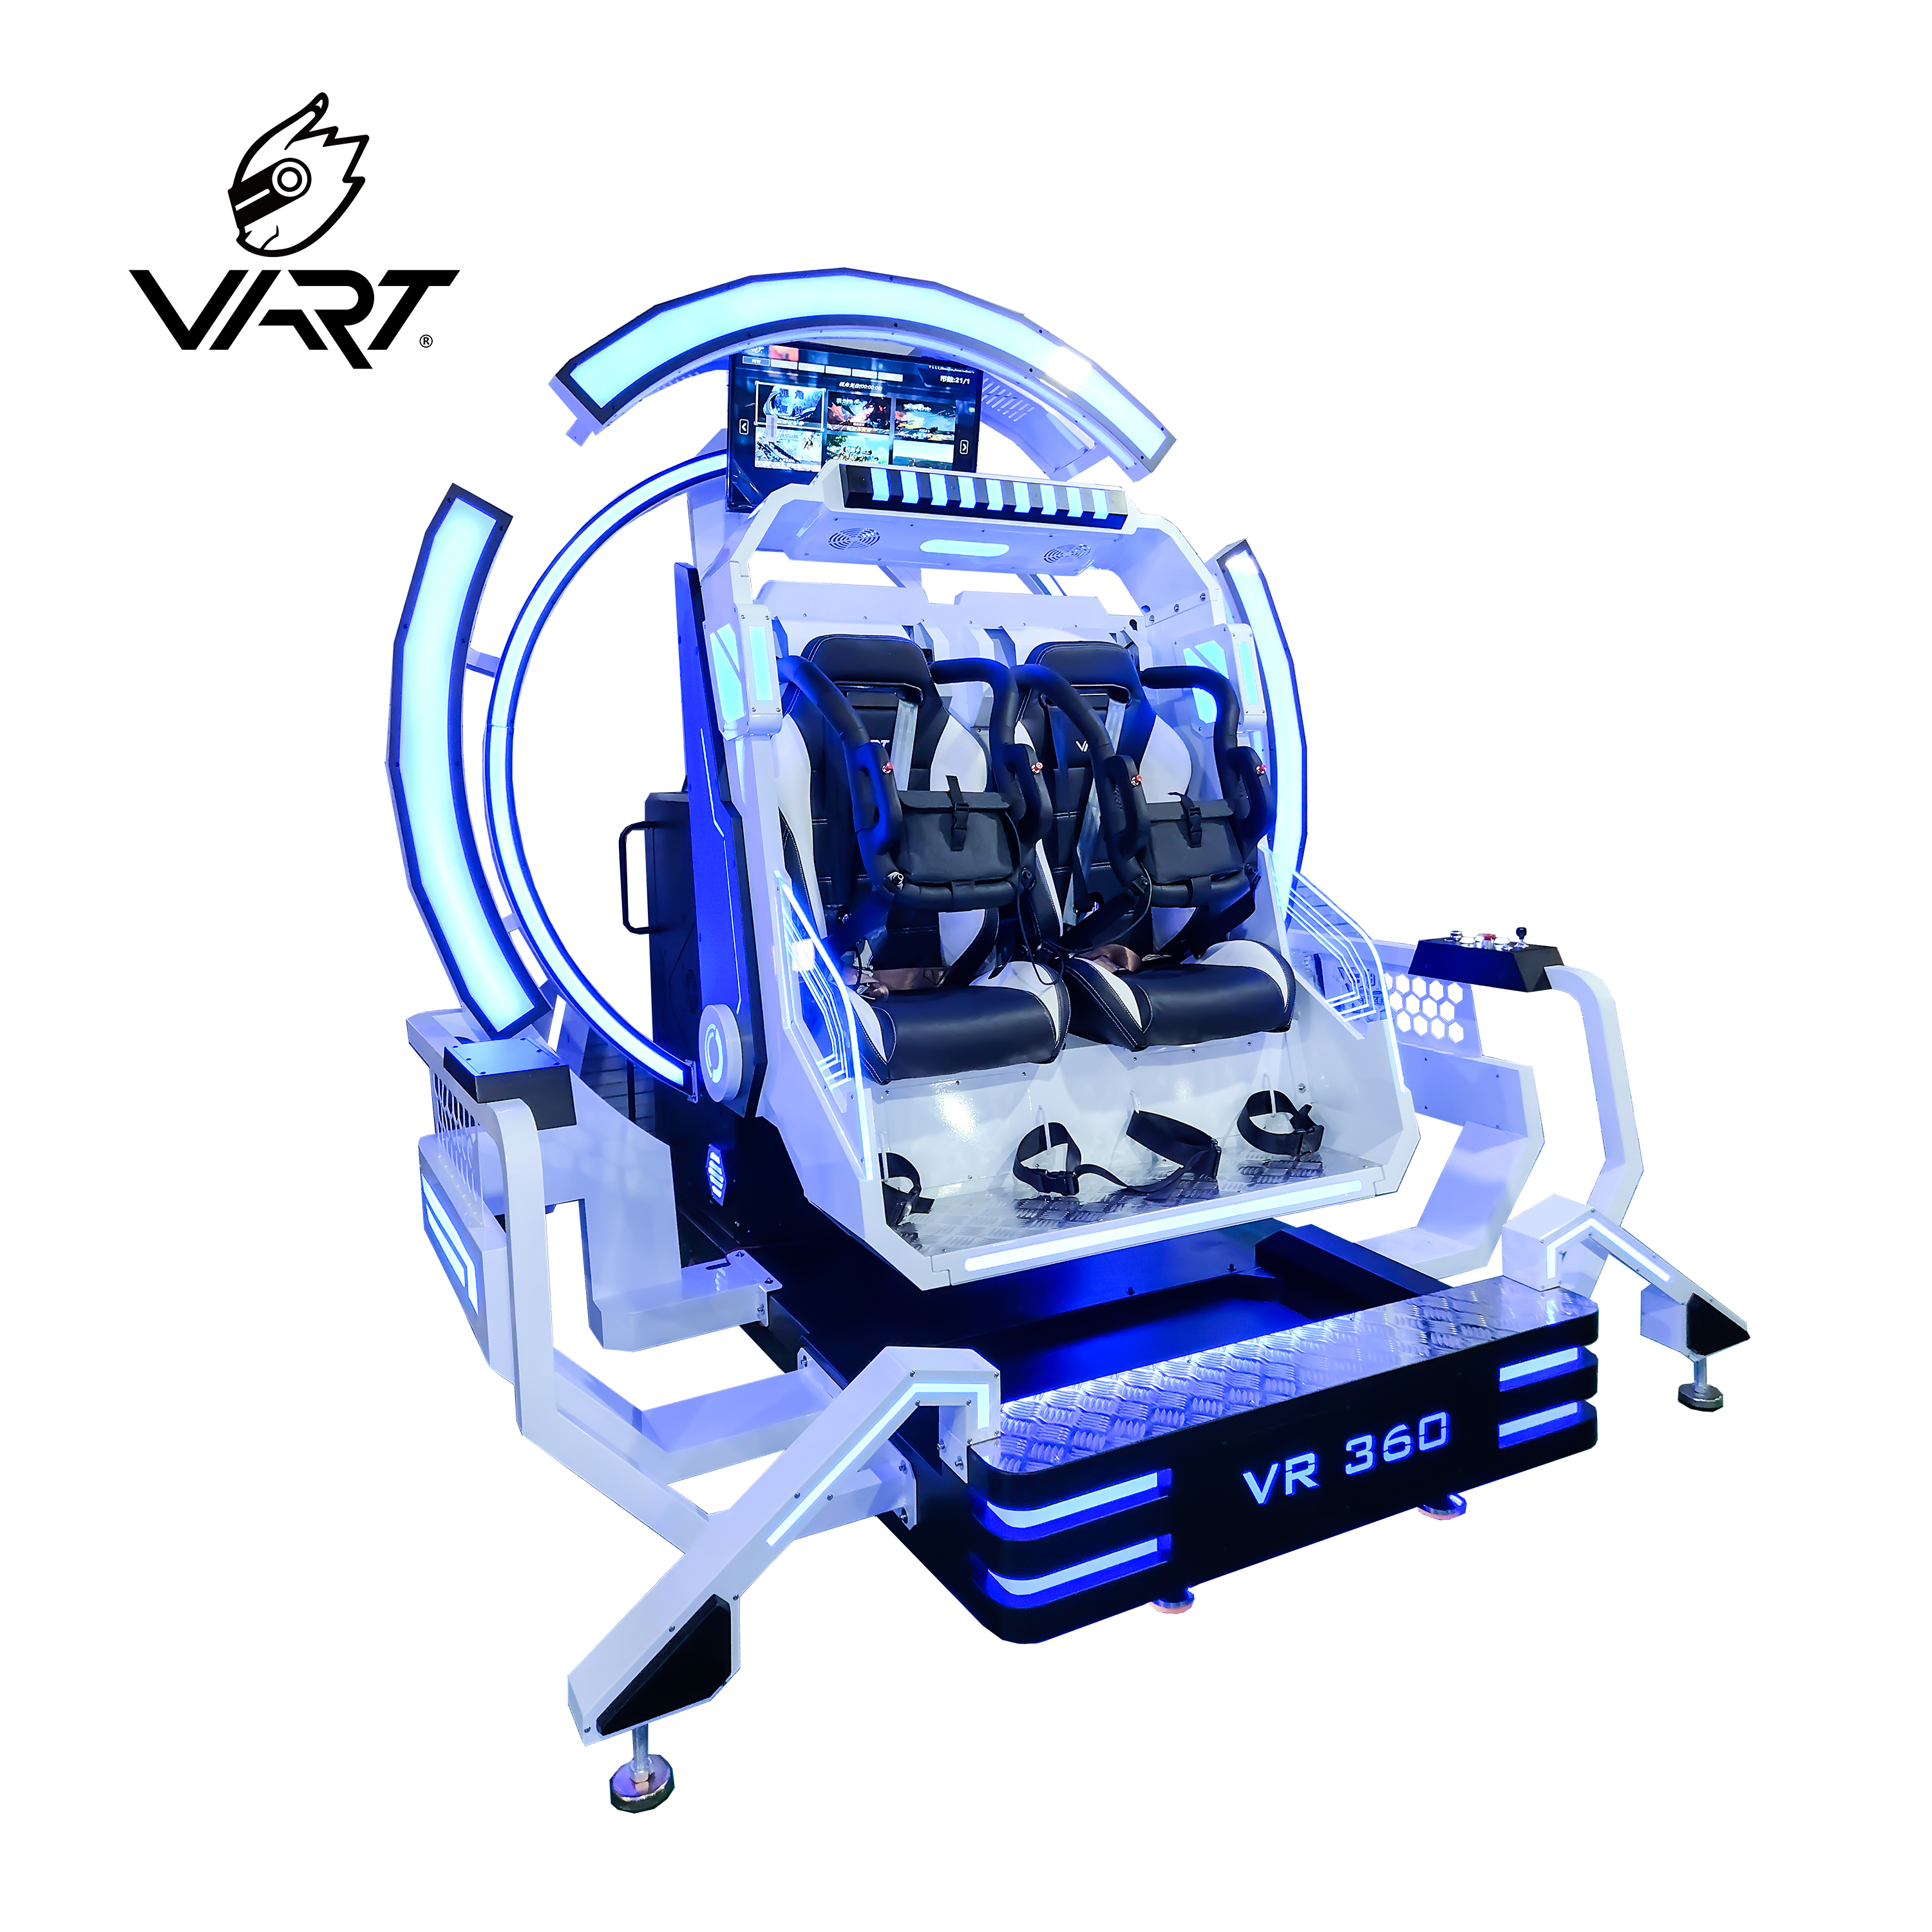 Krzesło VART 2-osobowe VR 360